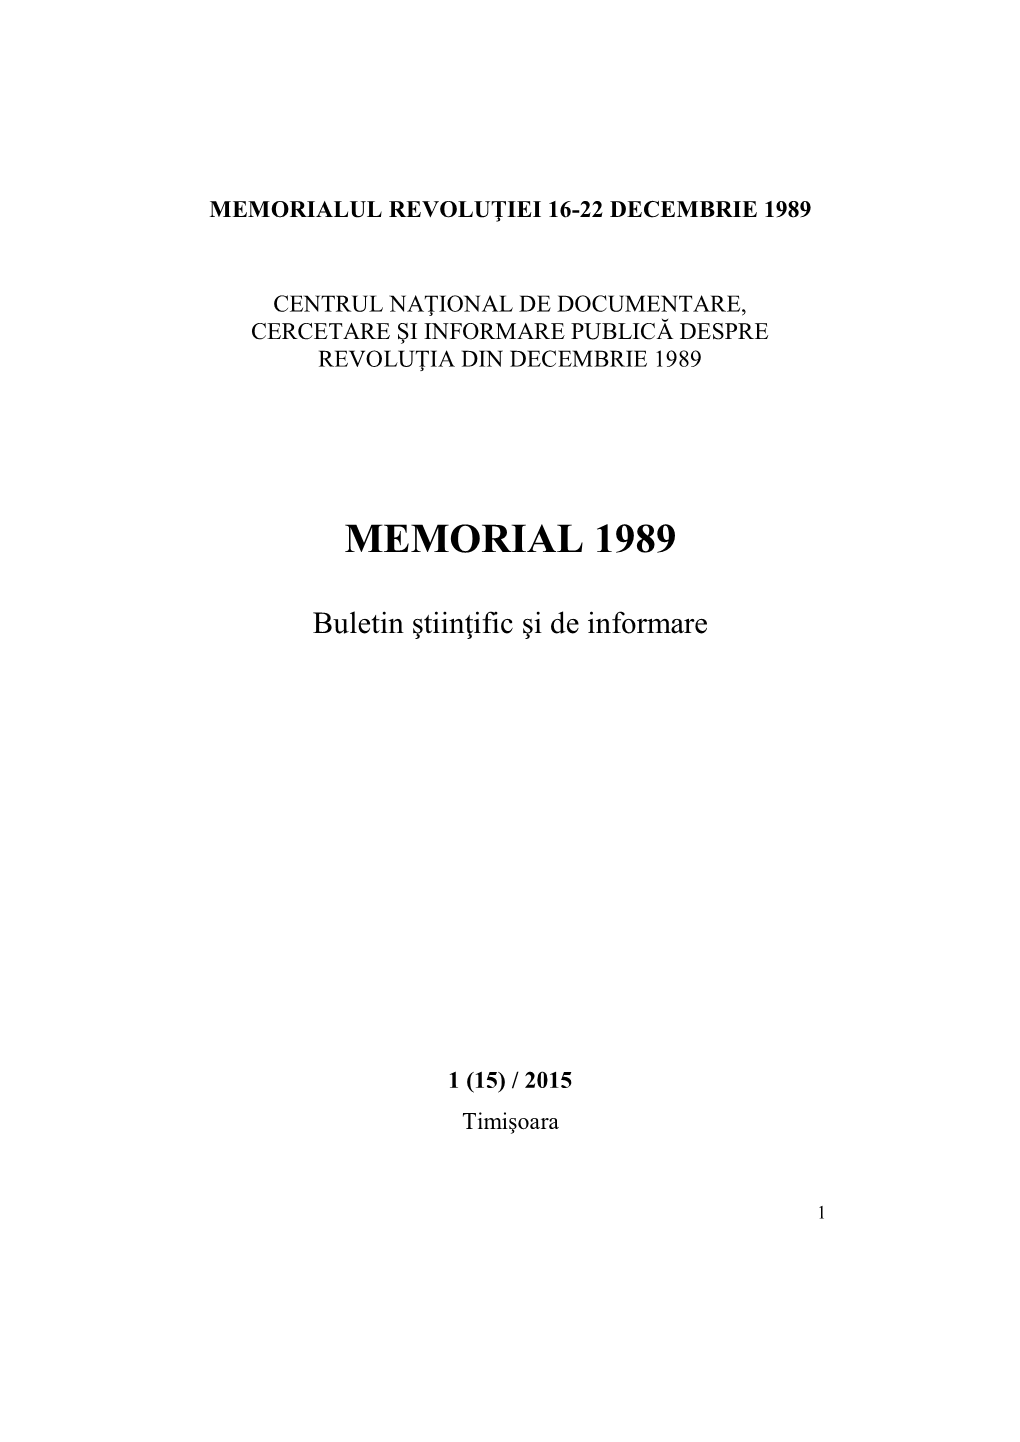 Memorial 1989